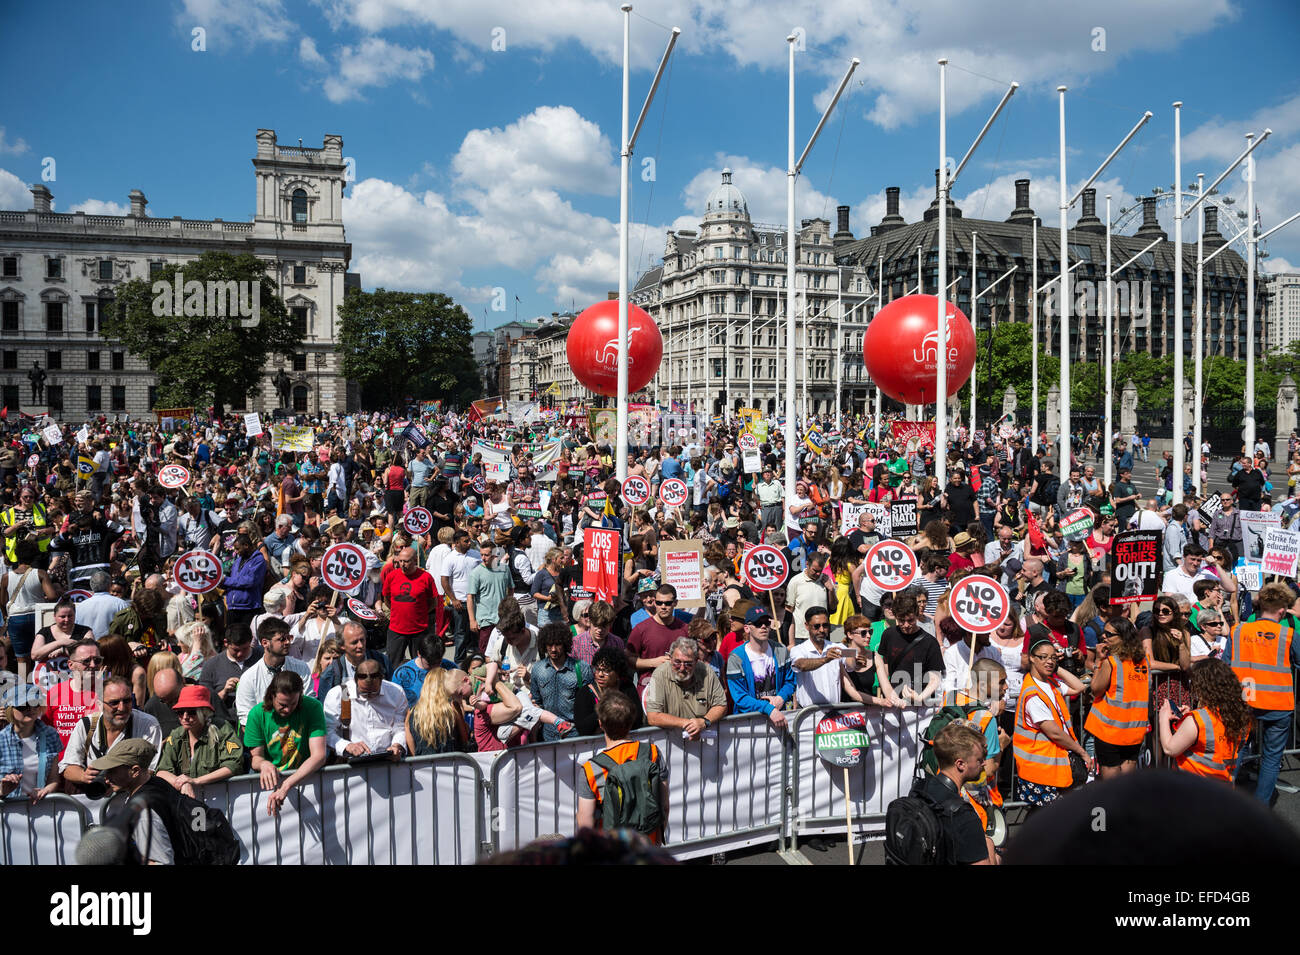 Demonstranten auf das Volk Montage Demonstration gegen Sparmaßnahmen, London, 21. Juni 2014 Stockfoto